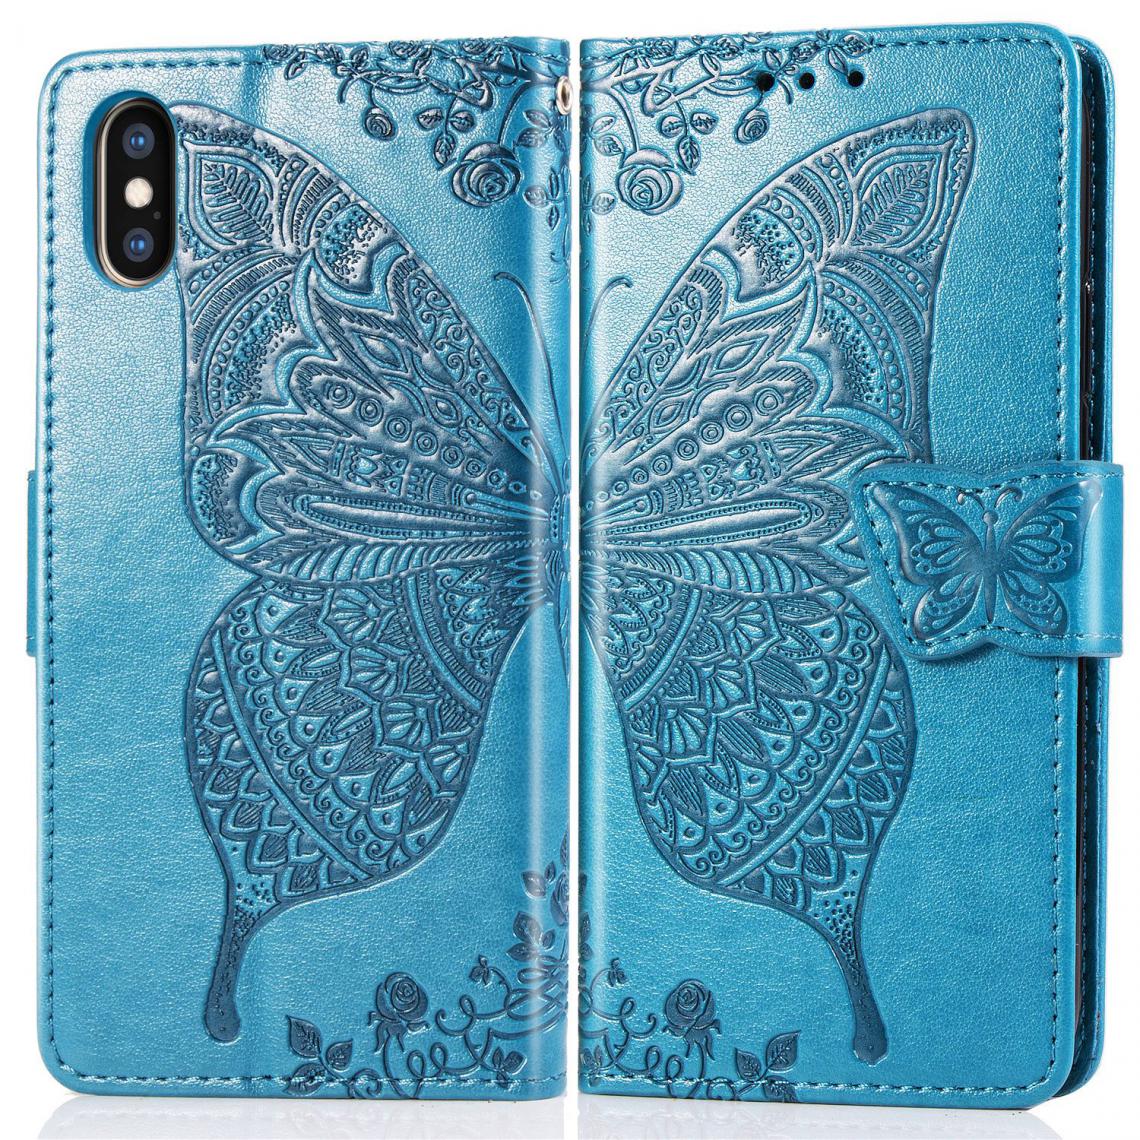 OtterBox - iPhone XS Max Housse Etui Coque de protection type portefeuille Papillon [Bleu] - Coque, étui smartphone